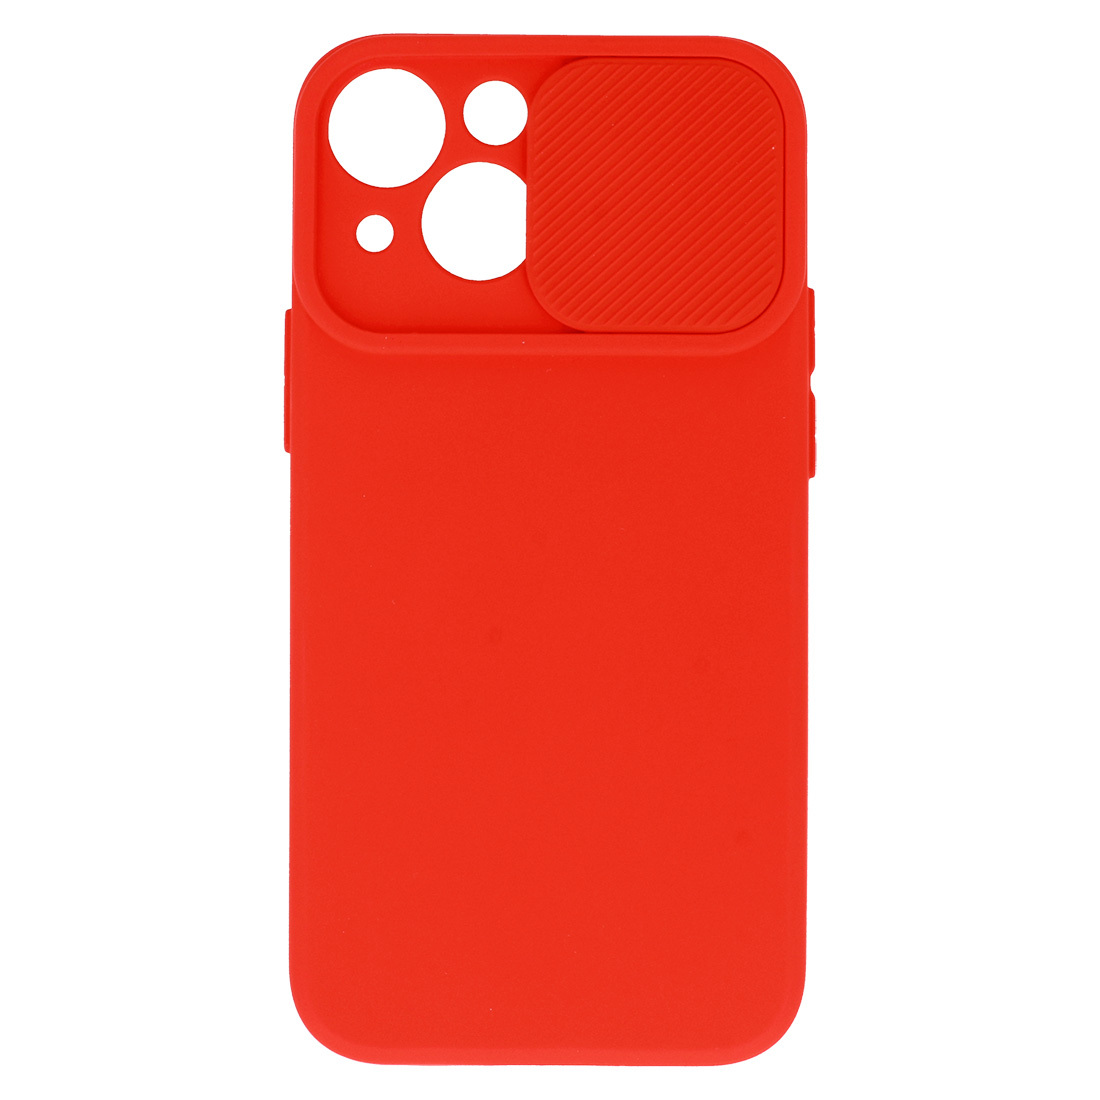 Pokrowiec etui z elastycznego TPU Camshield Soft Case czerwone APPLE iPhone 11 / 4